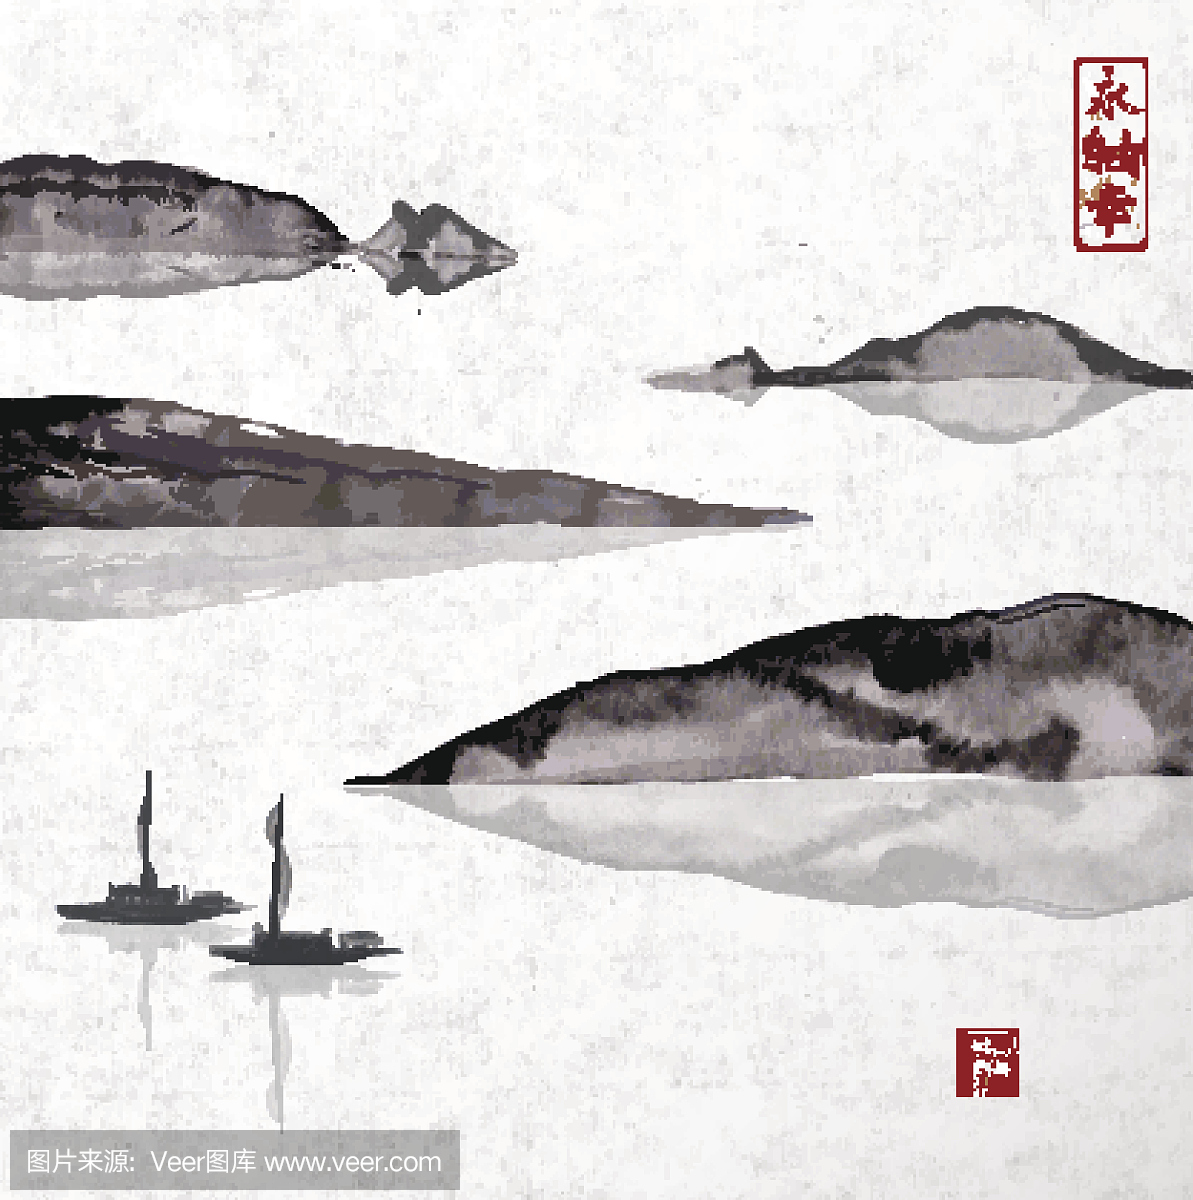 两艘渔船和山脉。传统日本水墨画总结。